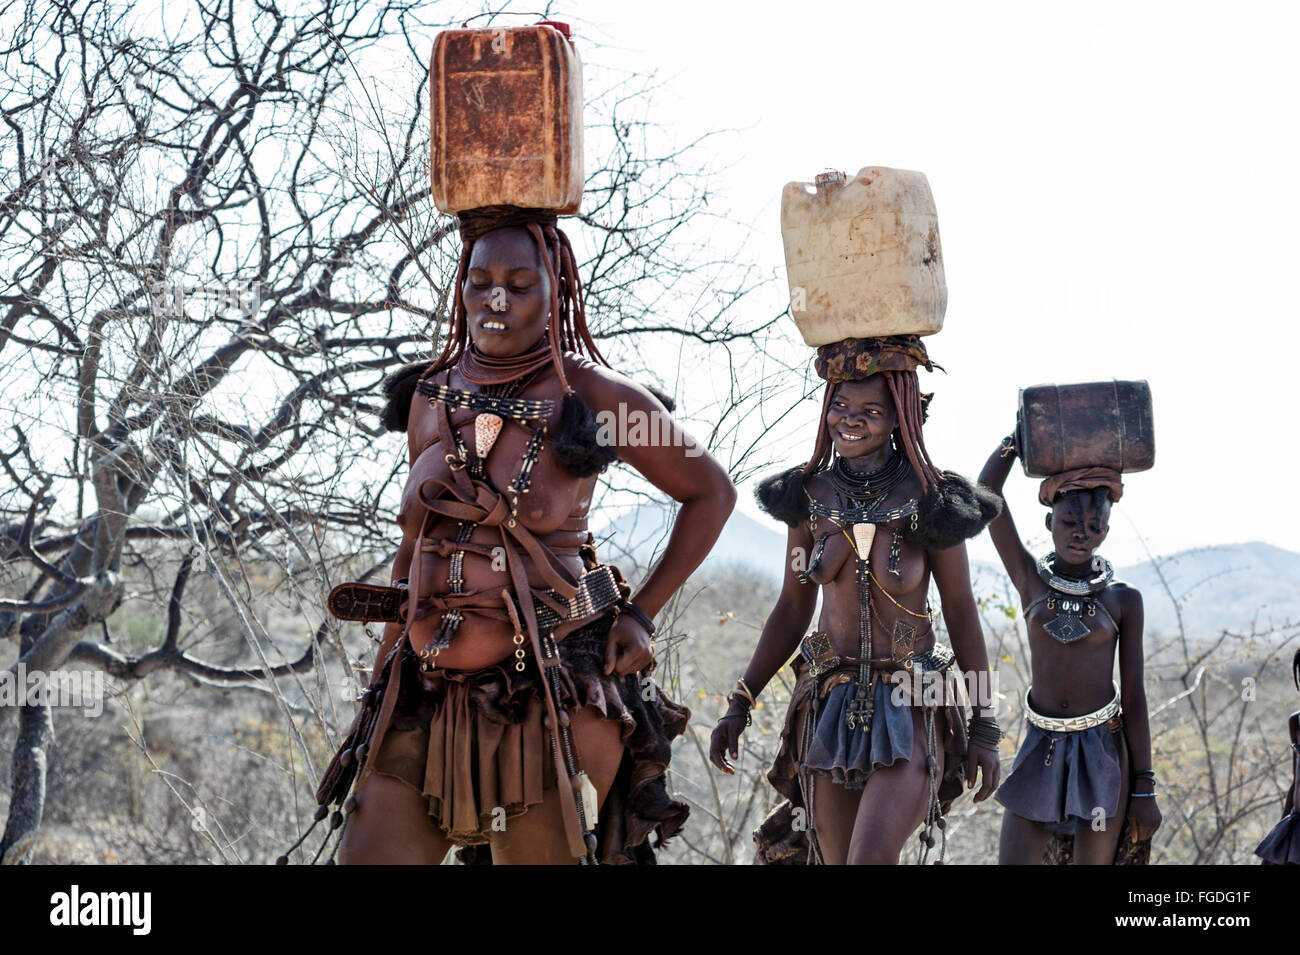 Les femmes Himba transportant des conteneurs en plastique plein d'eau sur la tête. Banque D'Images